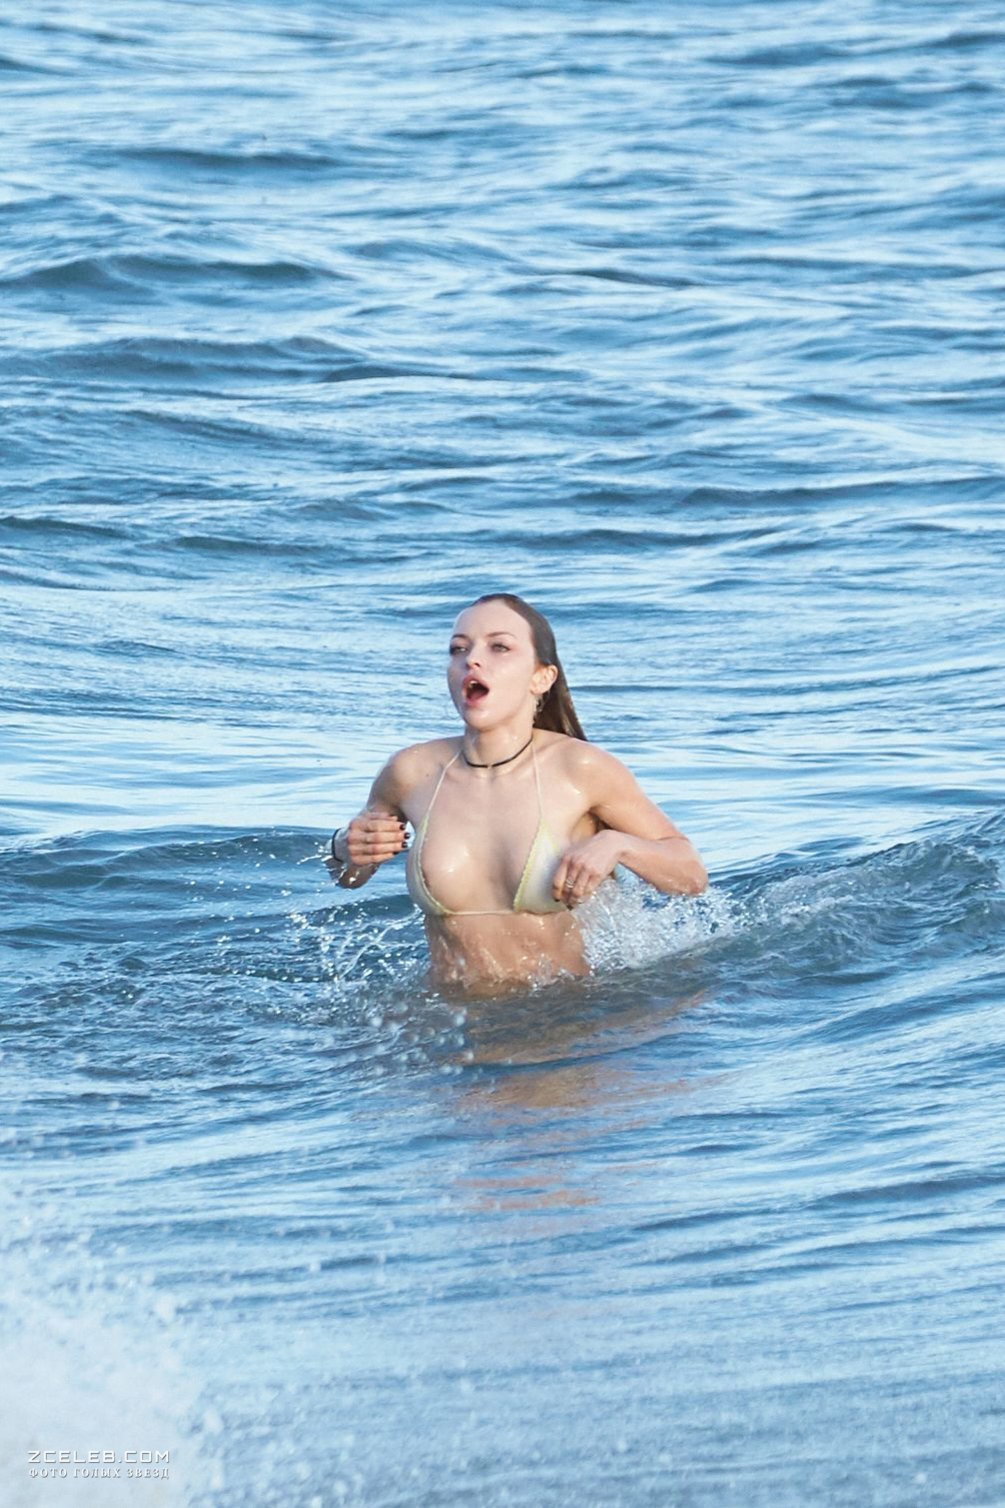 Сексуальная Франческа Иствуд засветила грудь на пляже в Малибу, 31.03.2017.